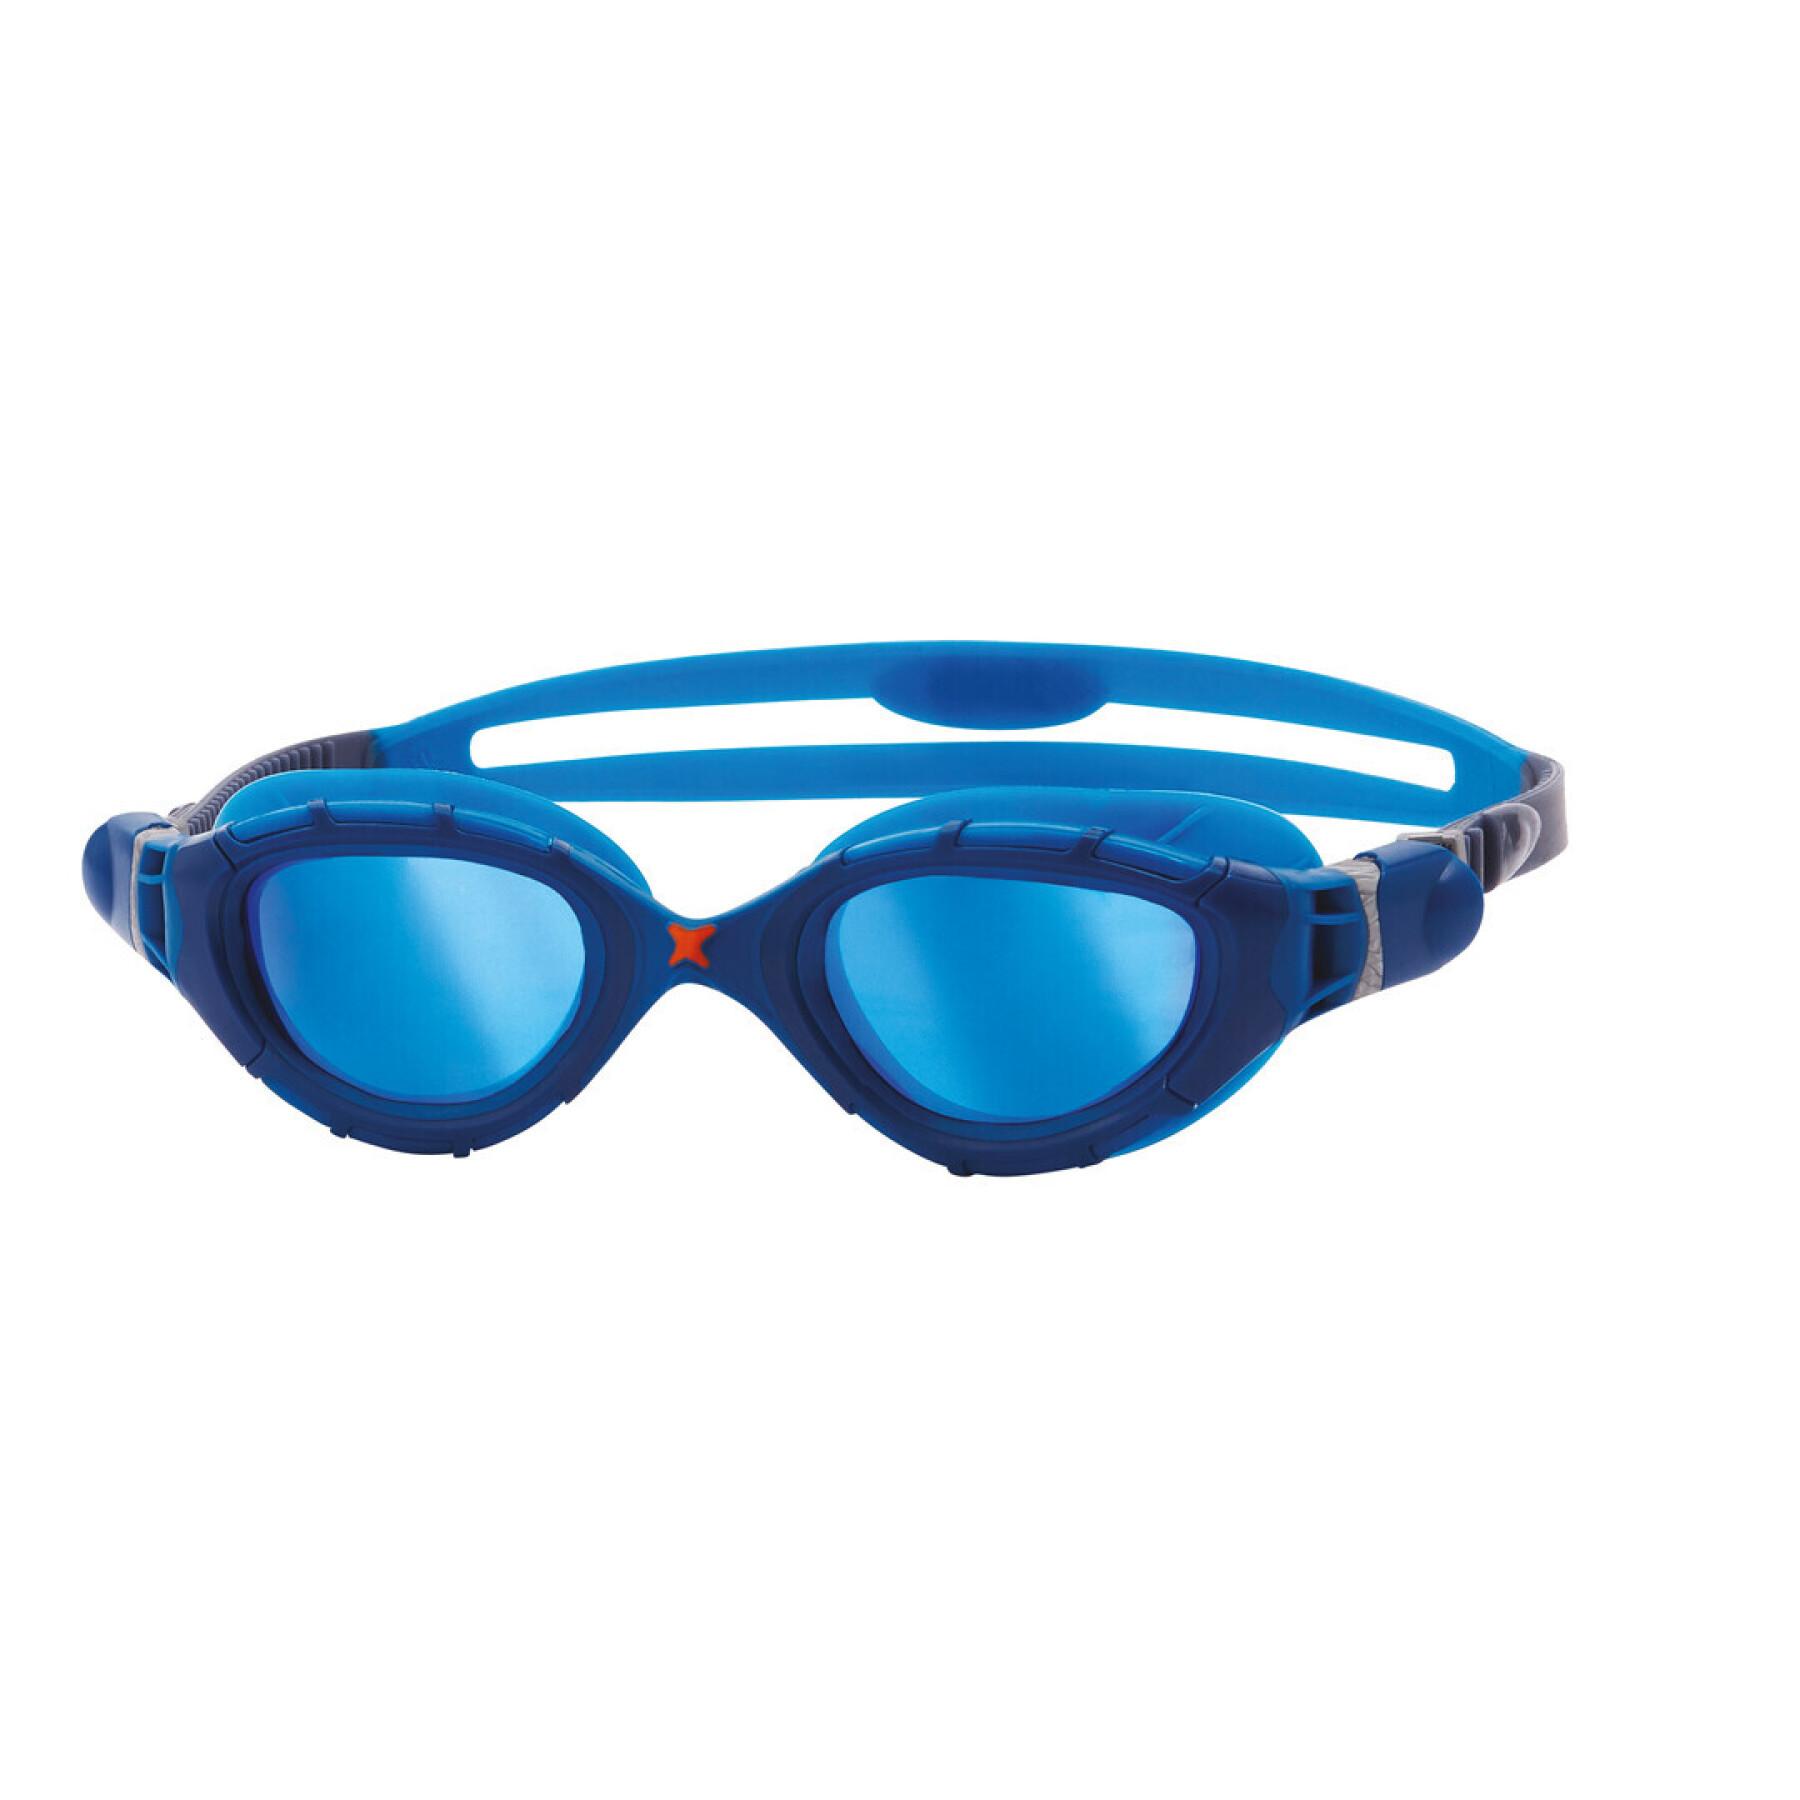 Swimming goggles Zoggs Predator Flex